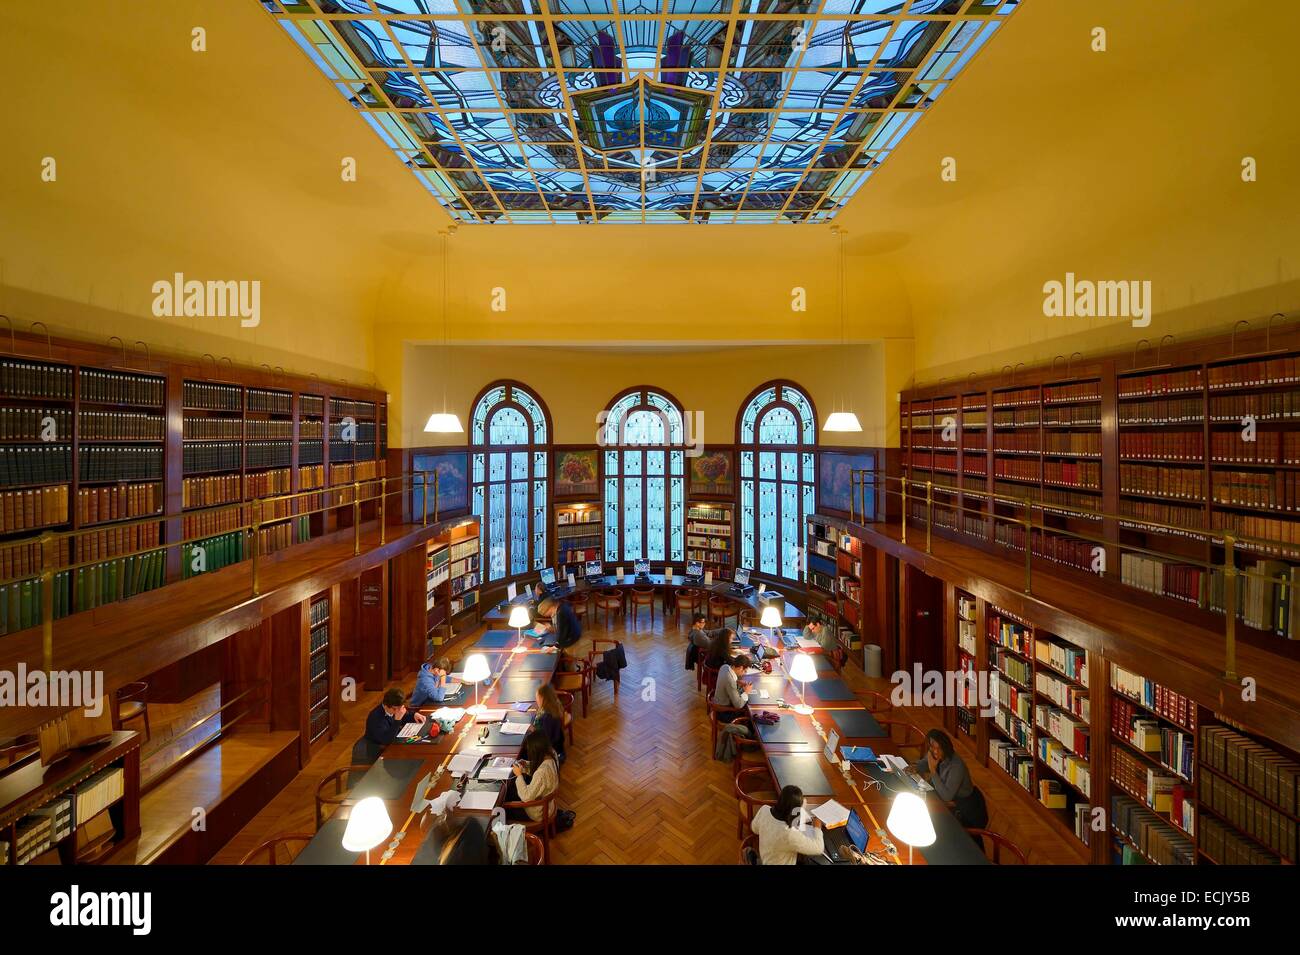 France, Marne, Reims, la bibliothèque Carnegie dans un style Art Nouveau,  les trois fenêtres en baie et le toit en verre de la salle de lecture ont  été conçues par le maître-verrier